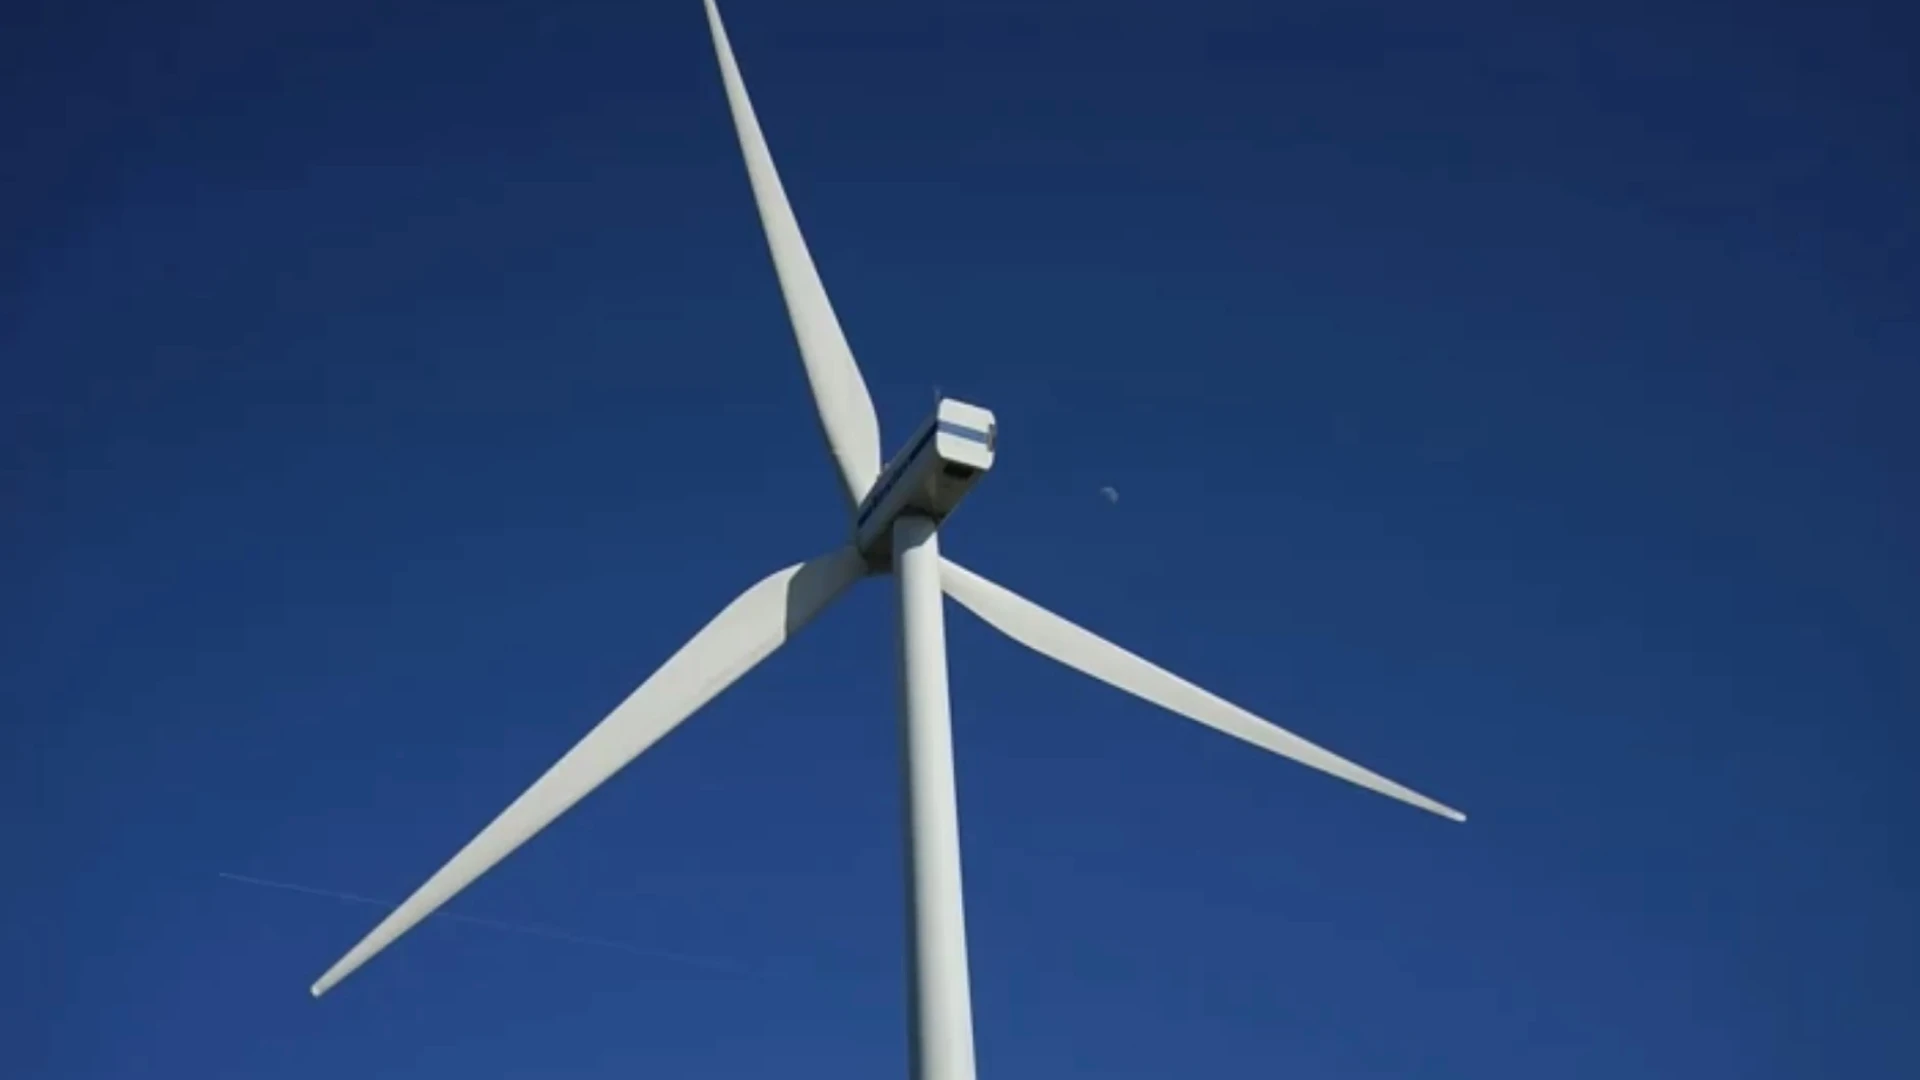 Na veel protest, weigert provincie vergunning voor vier windturbines in Hoegaarden